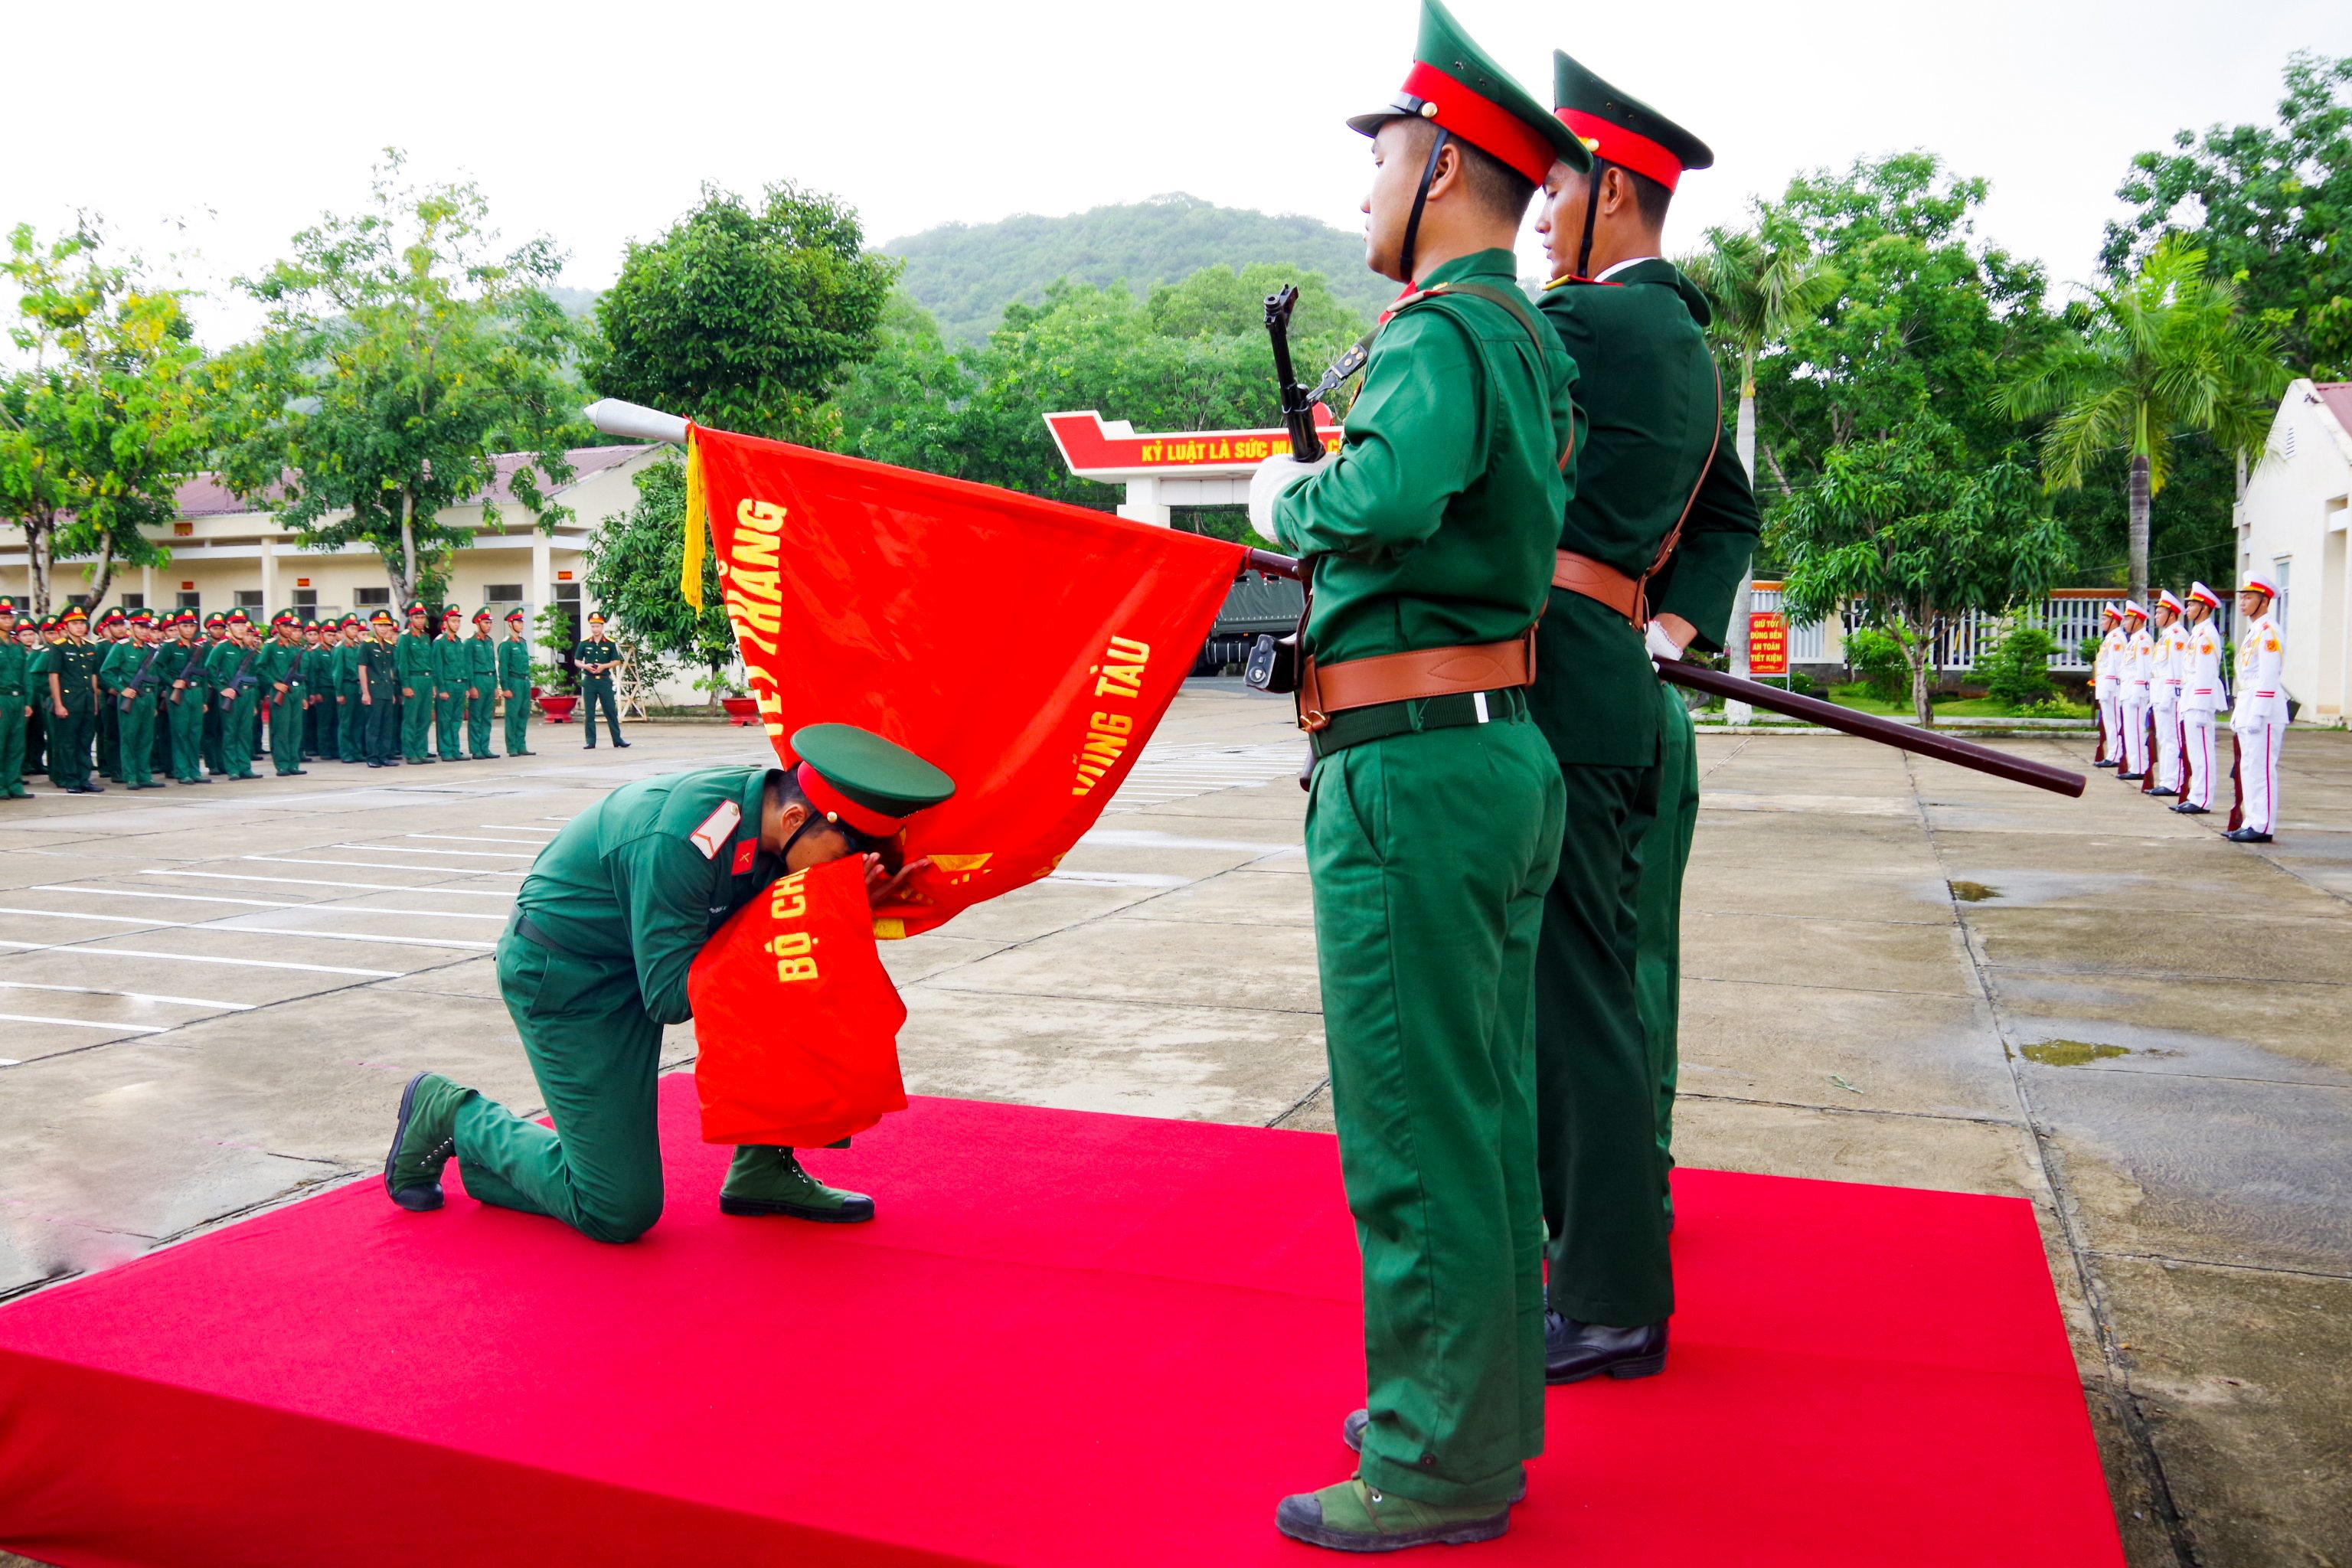 Chiến sĩ mới hôn lên cờ Quyết thắng sau khi đọc 10 lời thề của quân nhân. Ảnh: NHẬT LINH